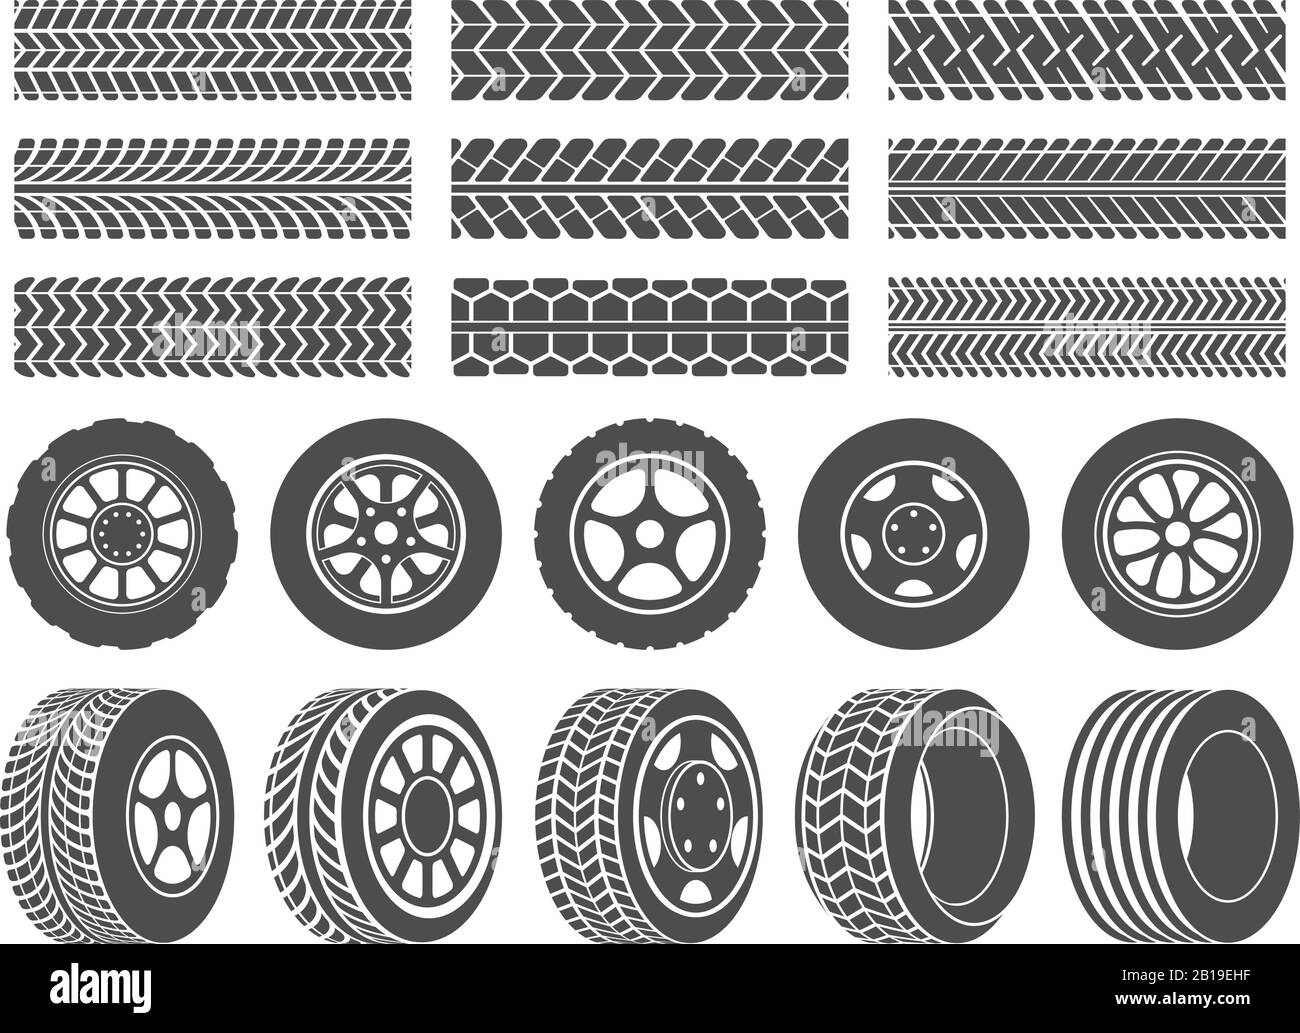 Radreifen. Laufbänder für Autoreifen, Symbole für Motorradrennen und verschmutzte Reifen zeigen die Vektorgrafiken an Stock Vektor